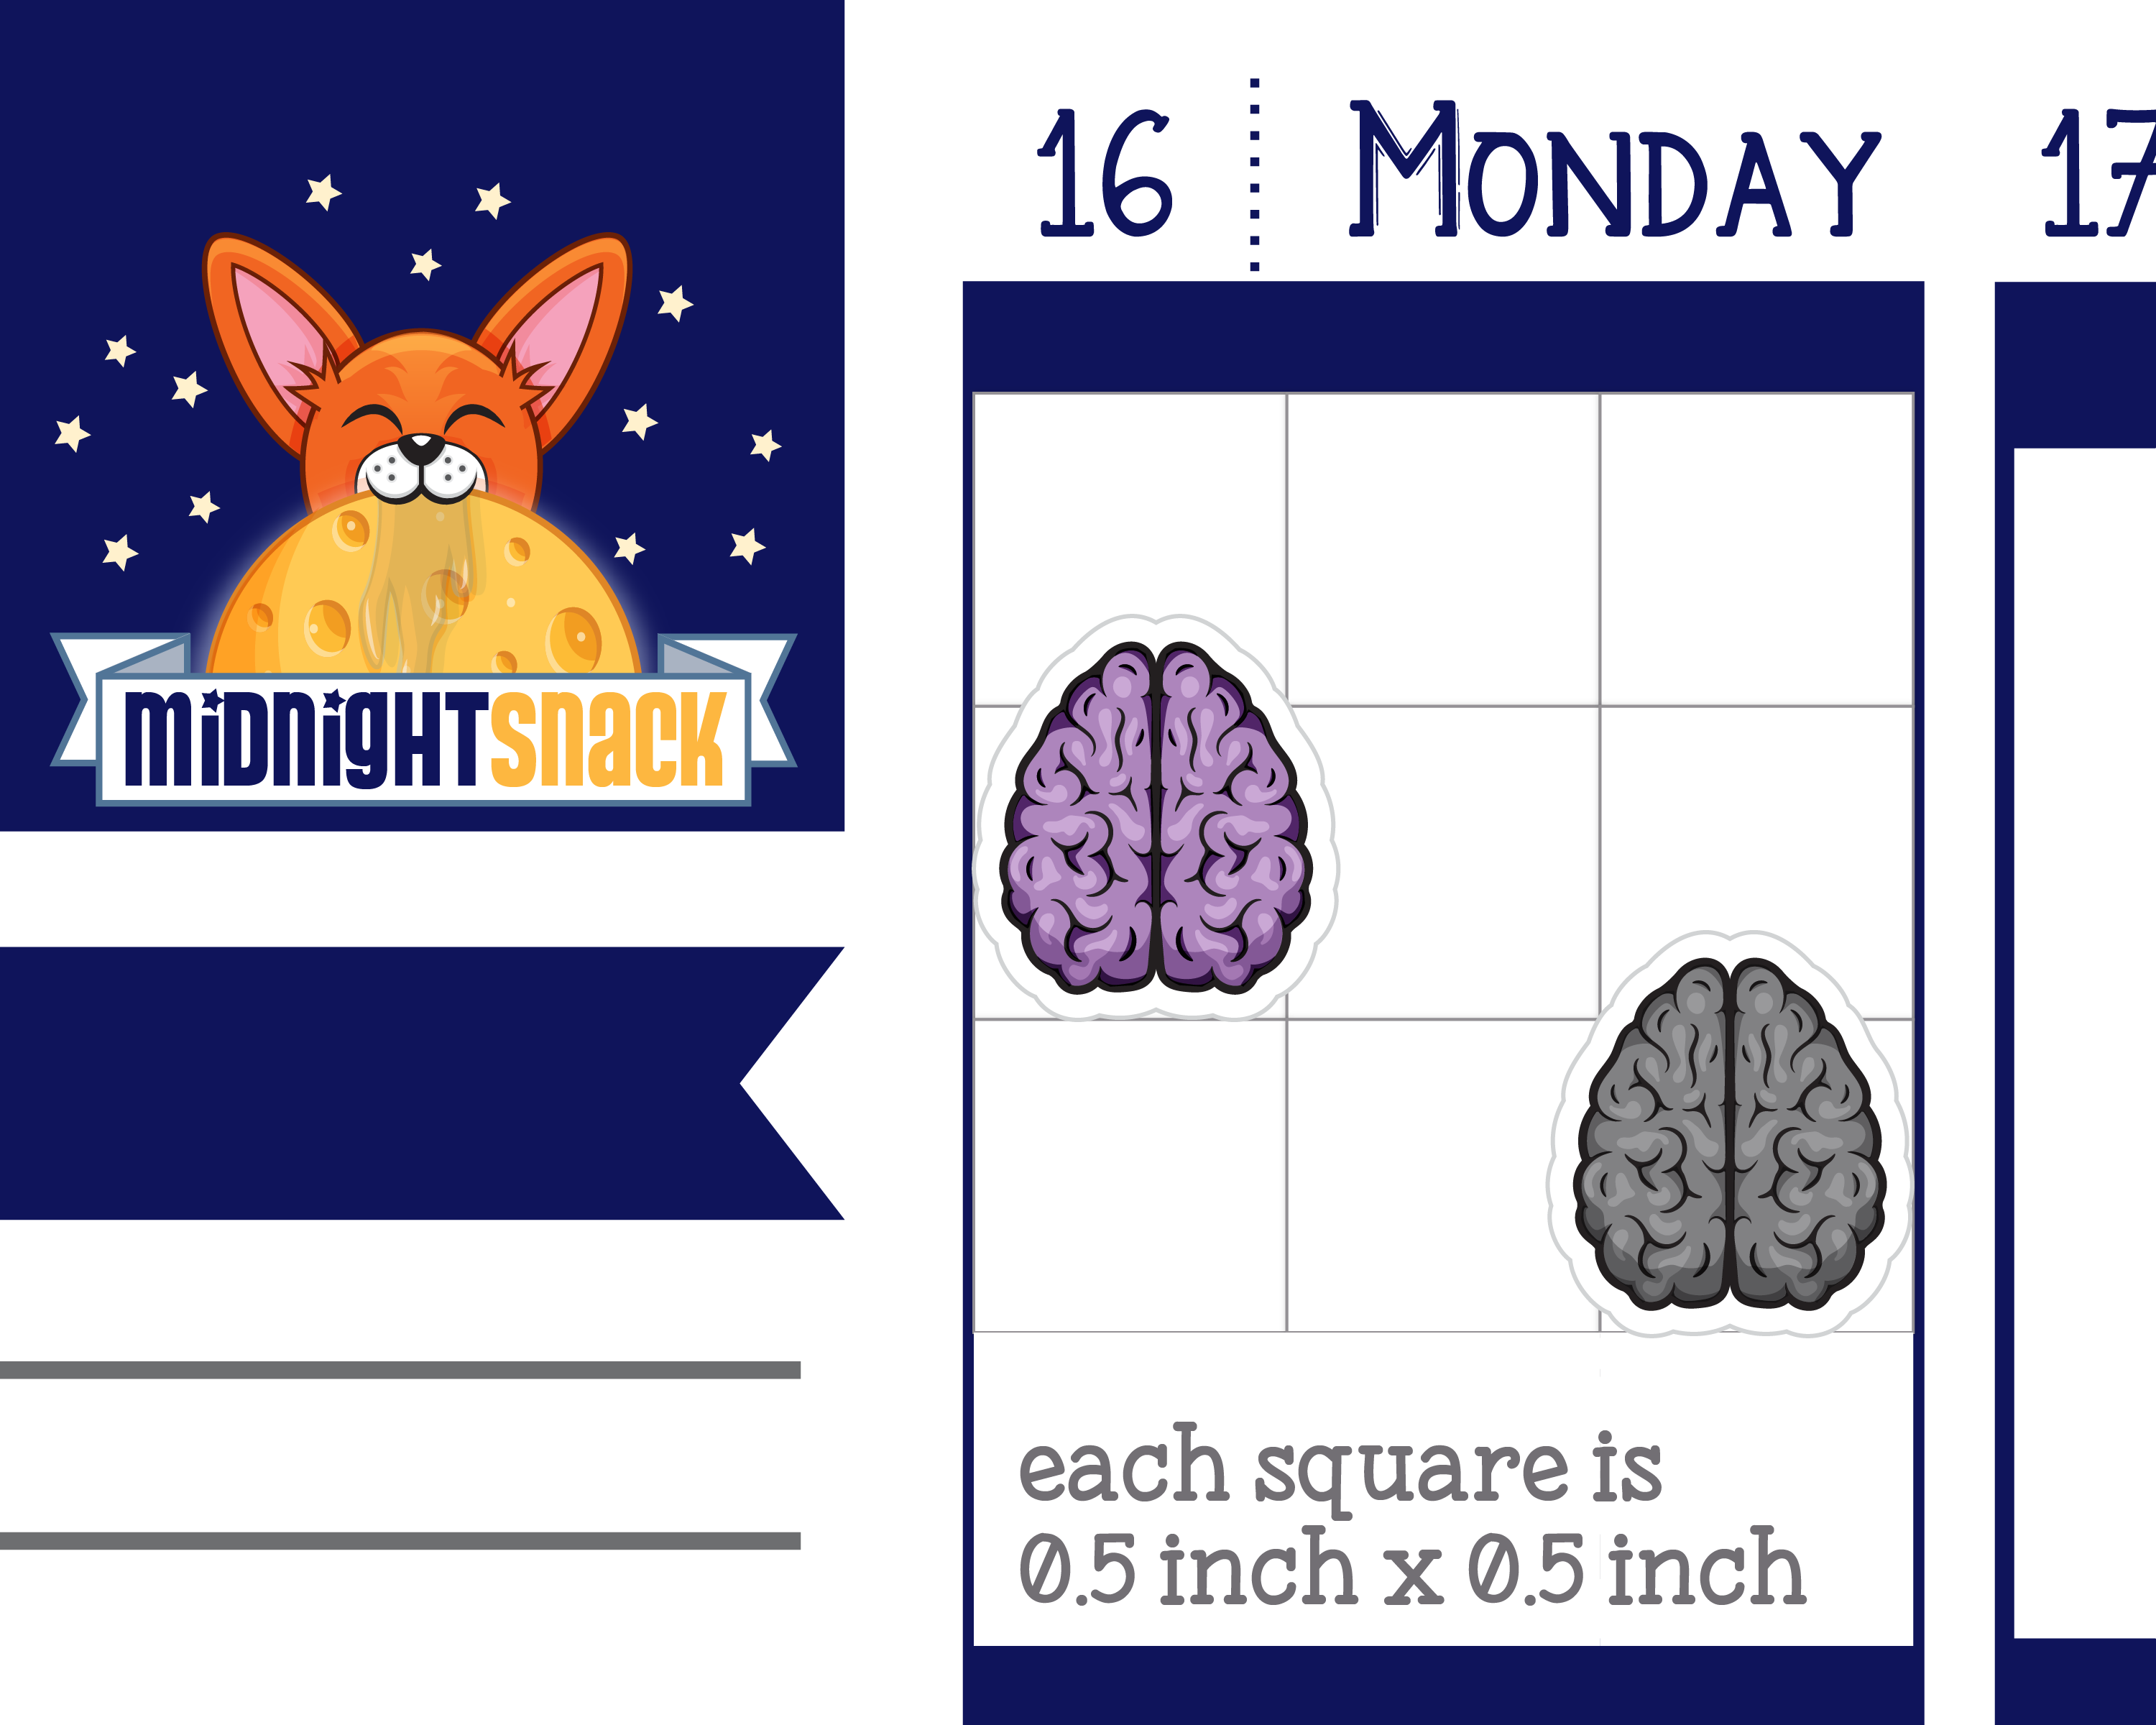 Brain Icon: Mental Health Planner Stickers Midnight Snack Planner